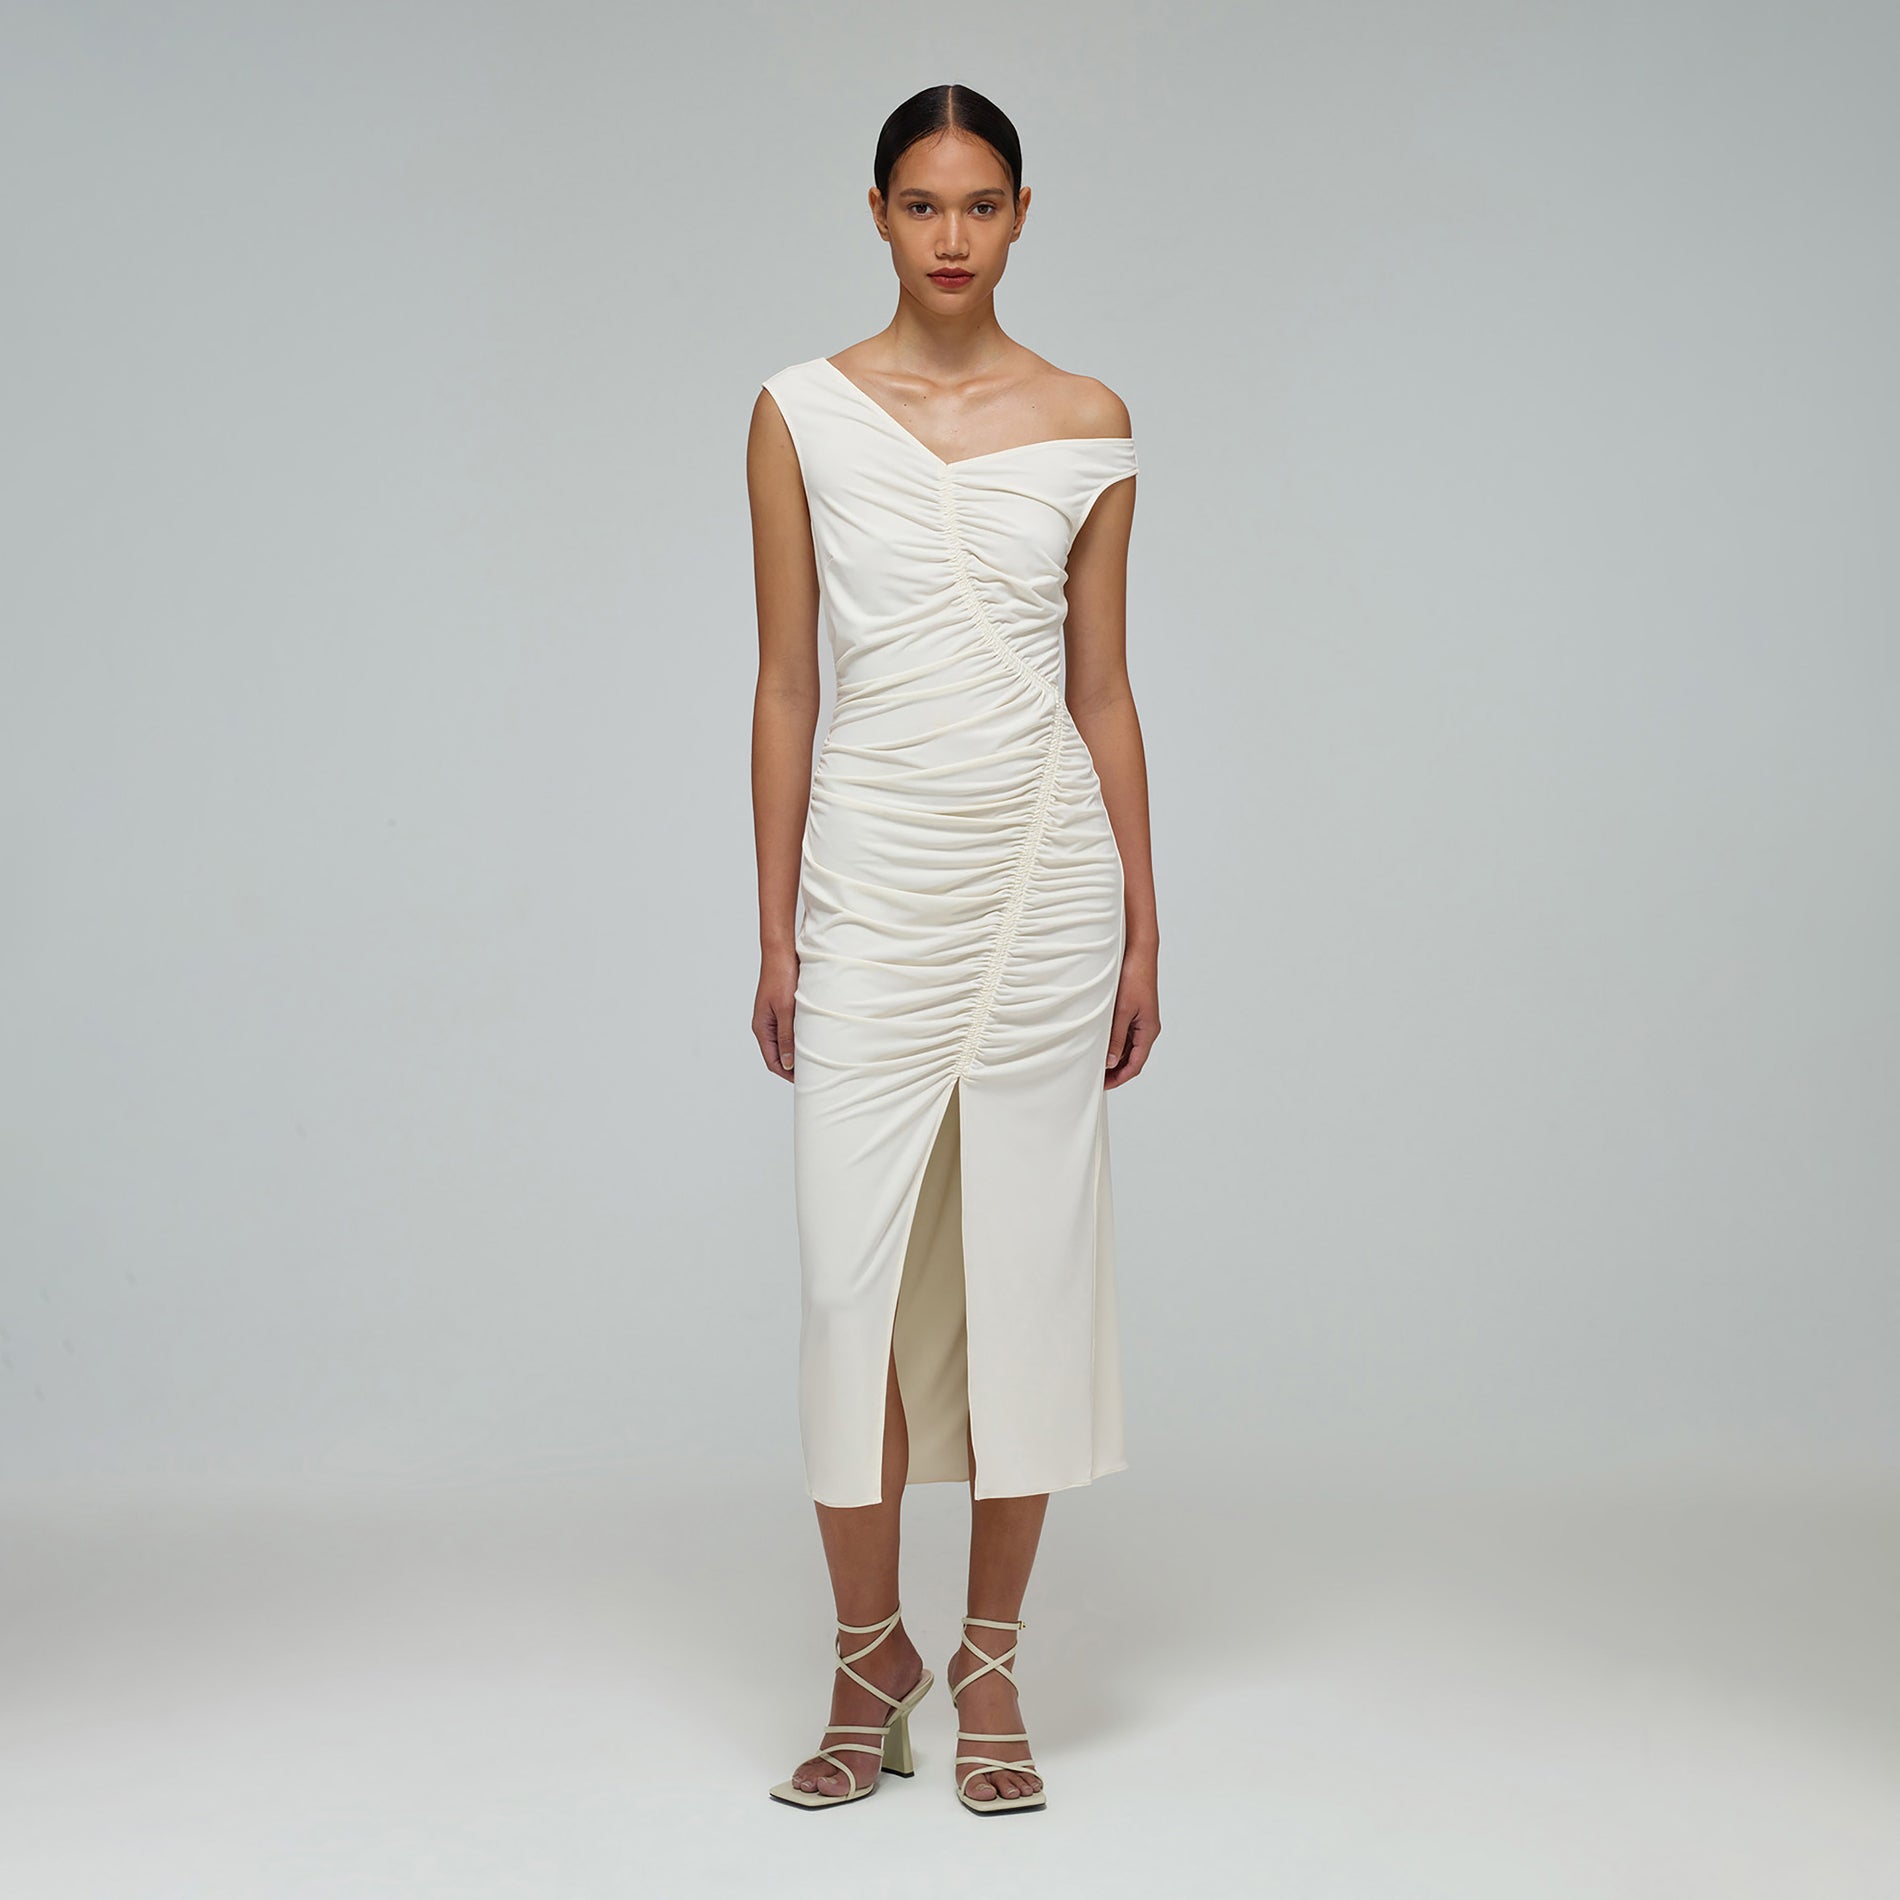 A woman wearing the Ivory Jersey Gathered Asymmetric Midi Dress